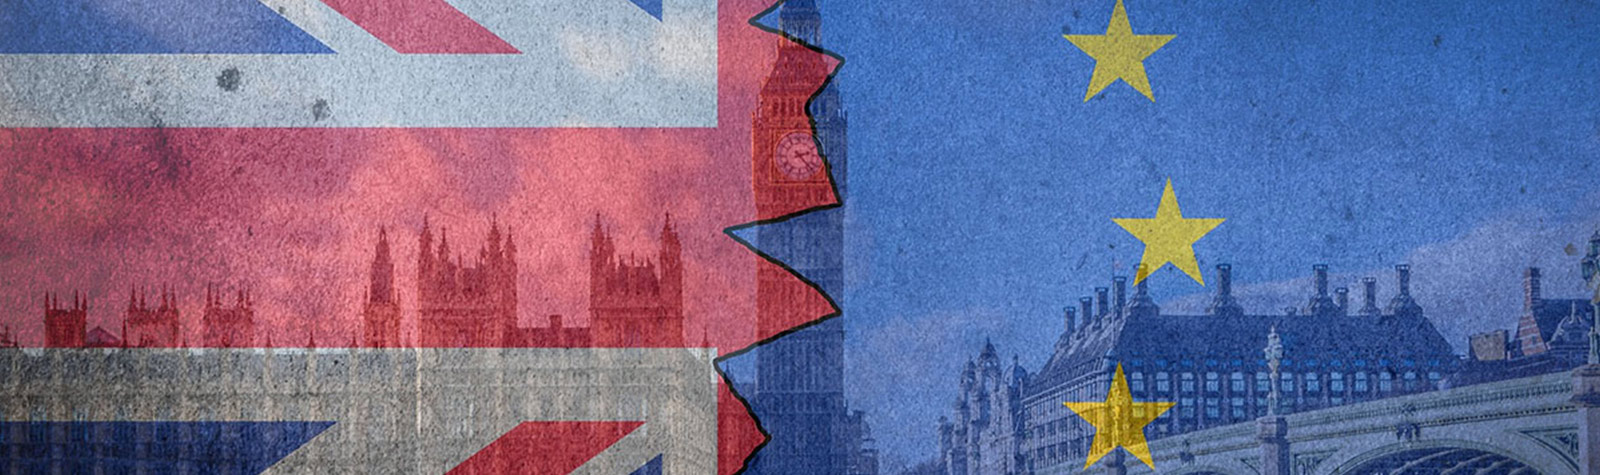 Brexit spedizioni e ecommerce – quali saranno gli effetti?